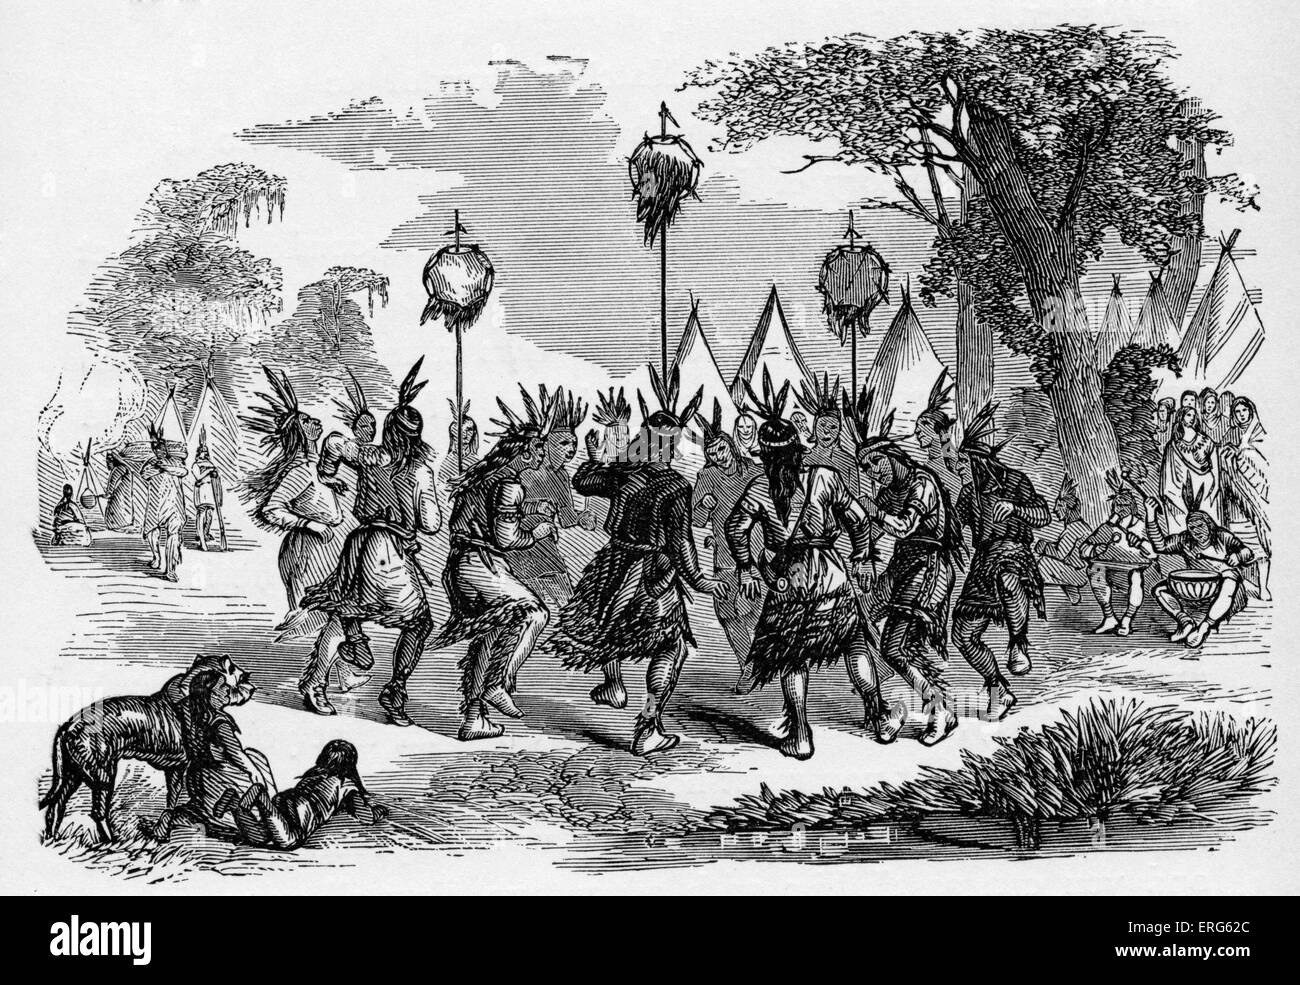 Nativi Americani di eseguire una danza del cuoio capelluto, pubblicato nel 1887. La Danza del cuoio capelluto è stata eseguita da guerrieri di tribù come i Foto Stock